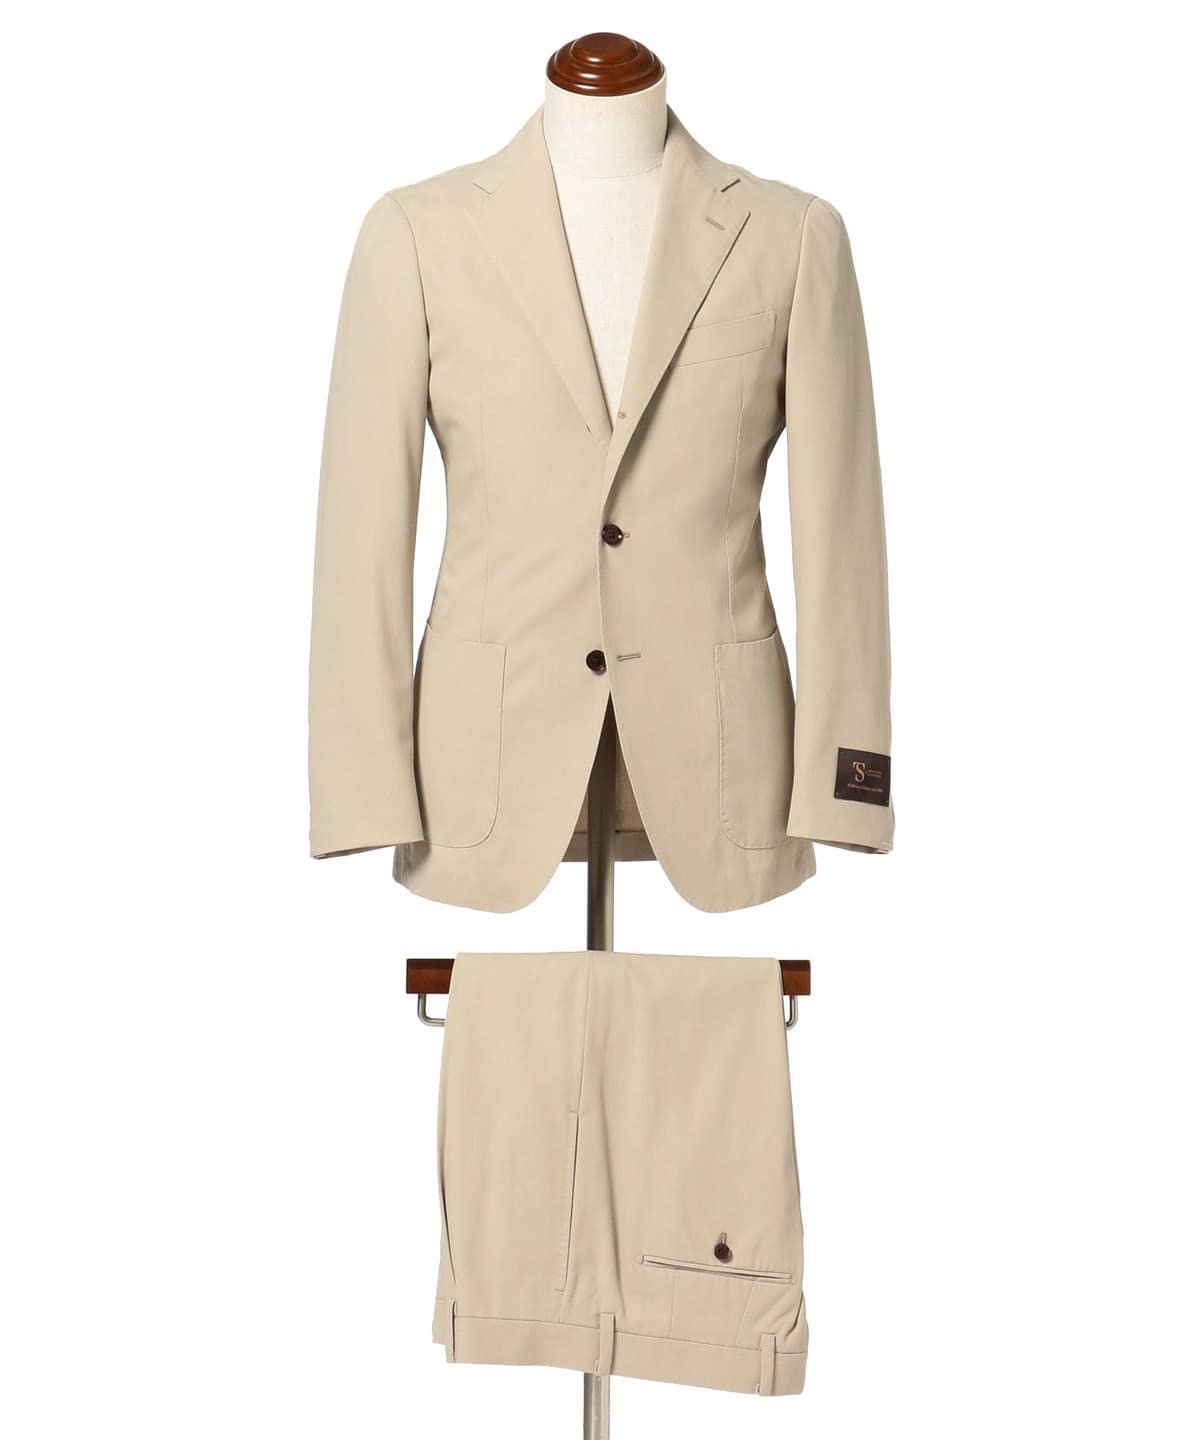 BEAMS F [Outlet] BEAMS F / EASY SONDRIO cotton suit (suit/tie suit 